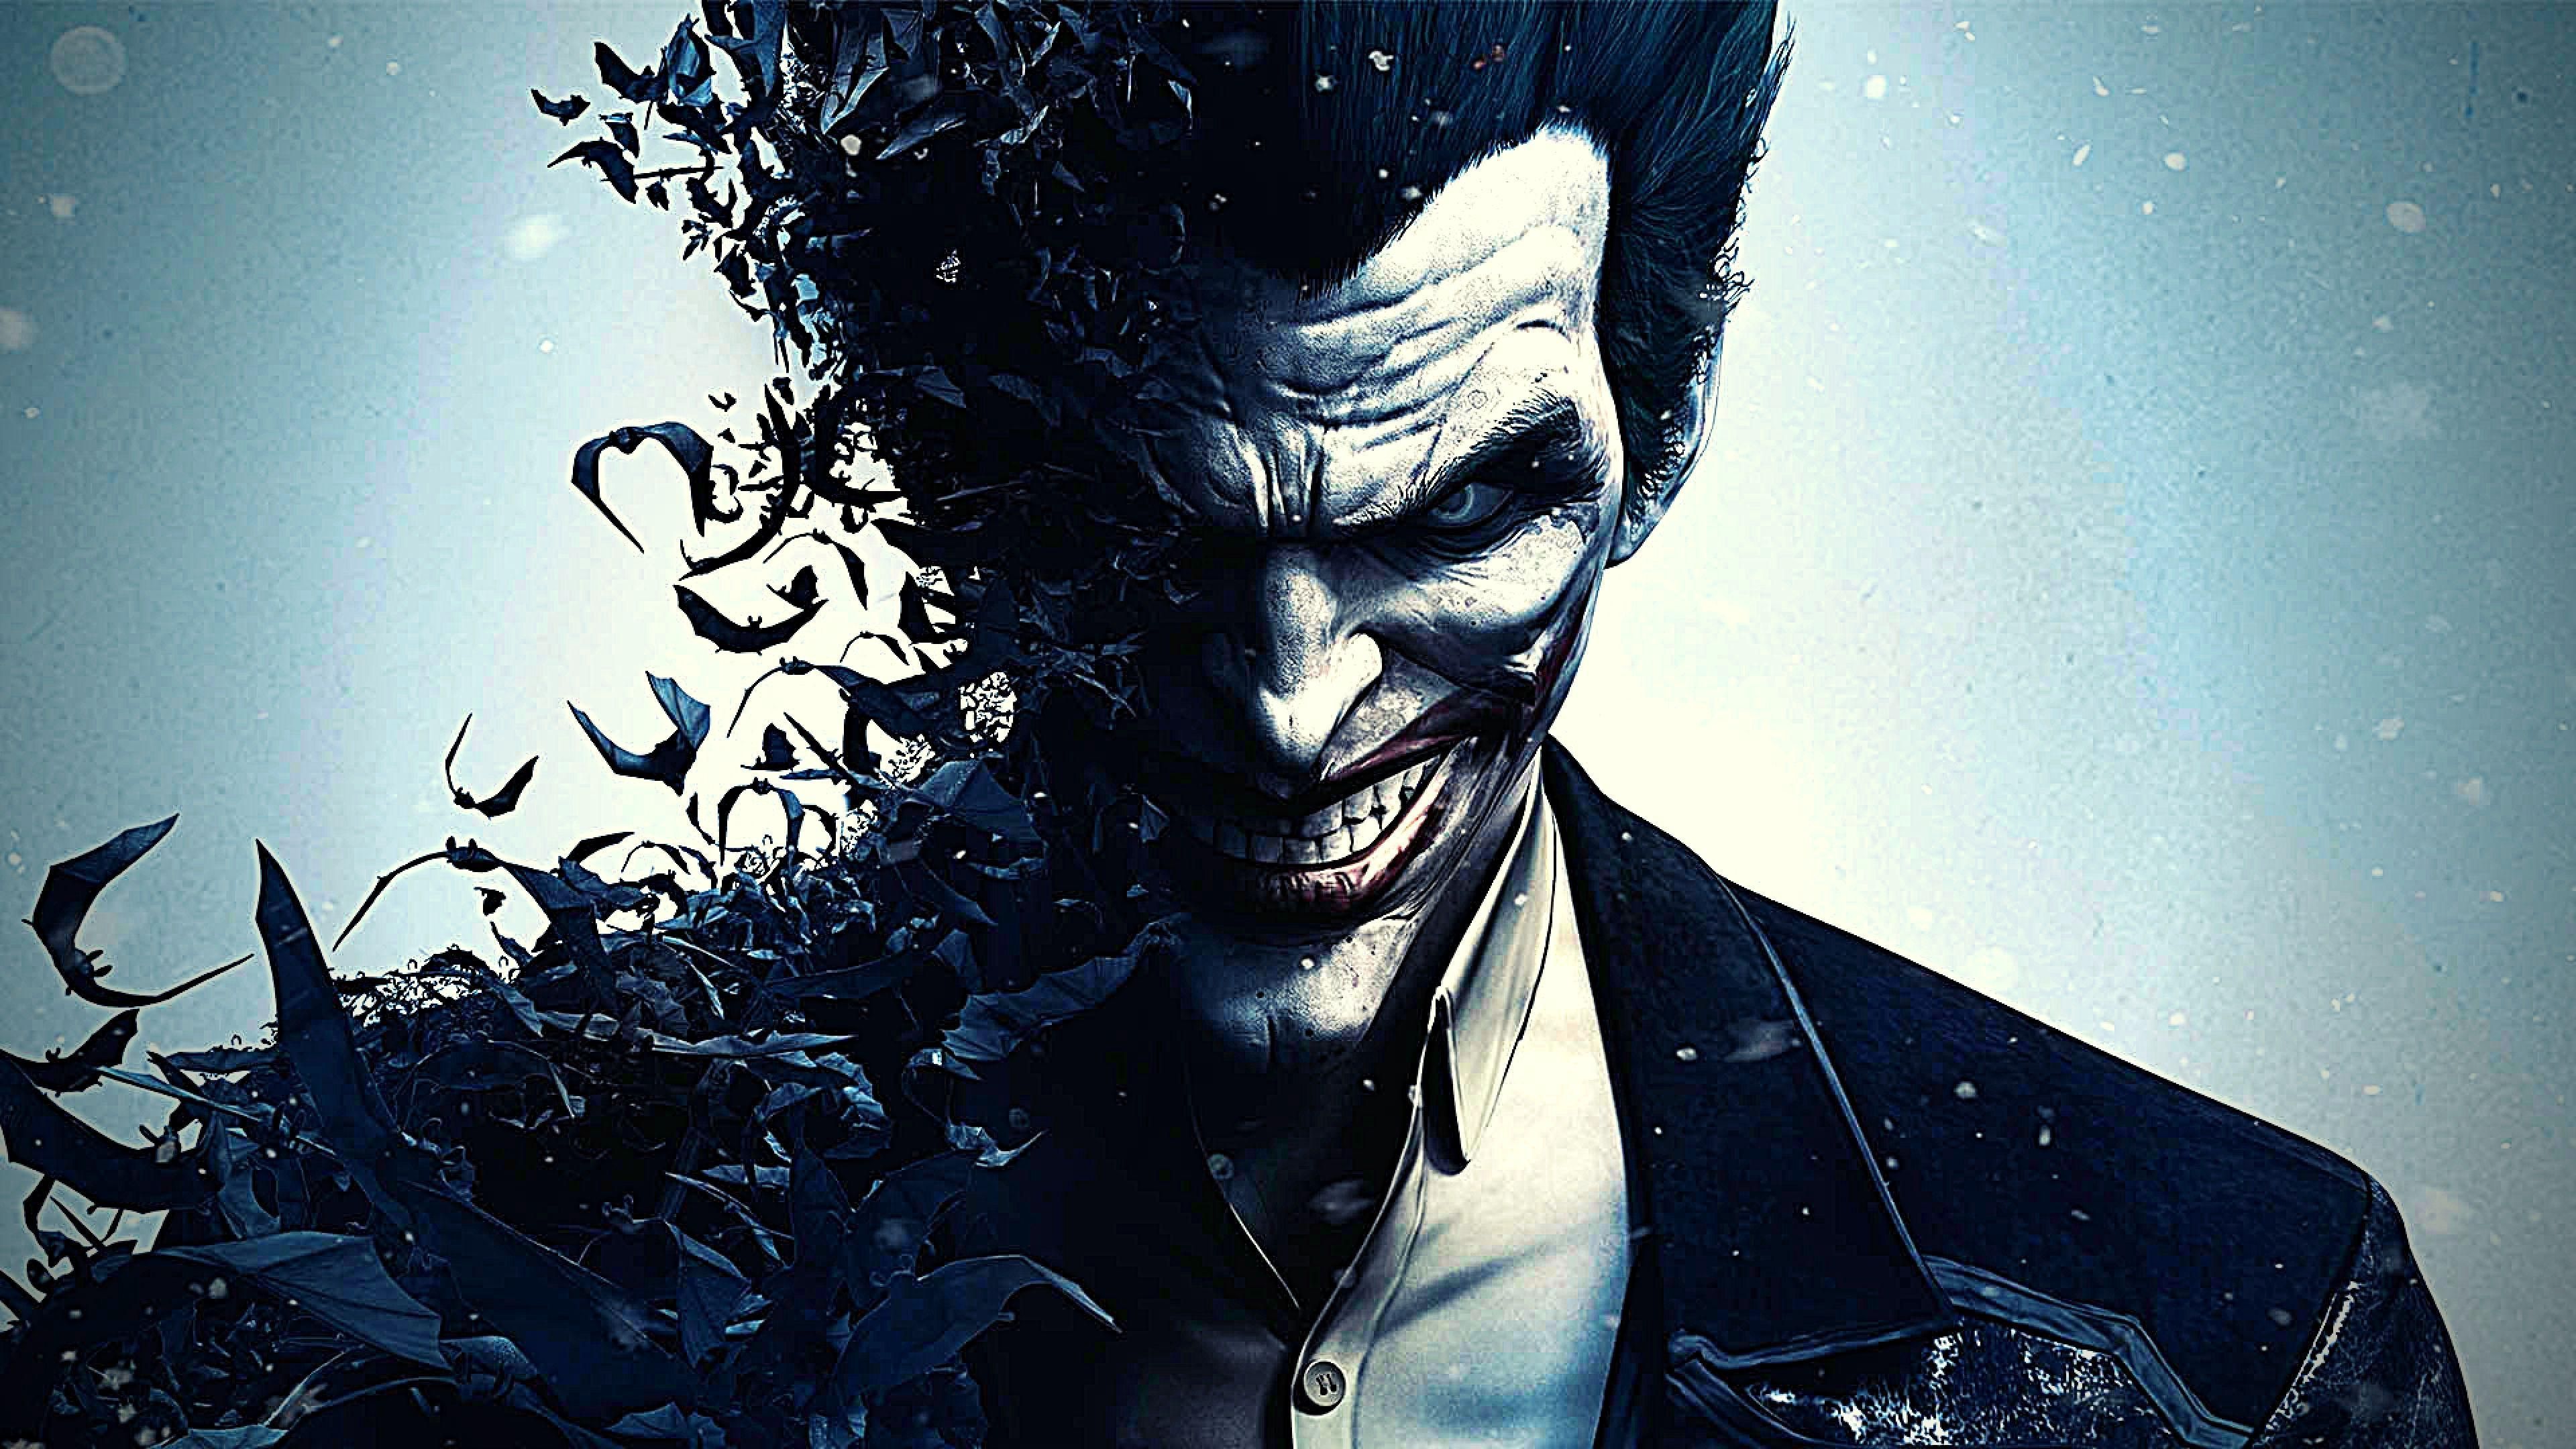 Angry Joker [3840x2160]. Full credits to u/ WilliamC520. Joker HD wallpaper, Joker wallpaper, Batman joker wallpaper